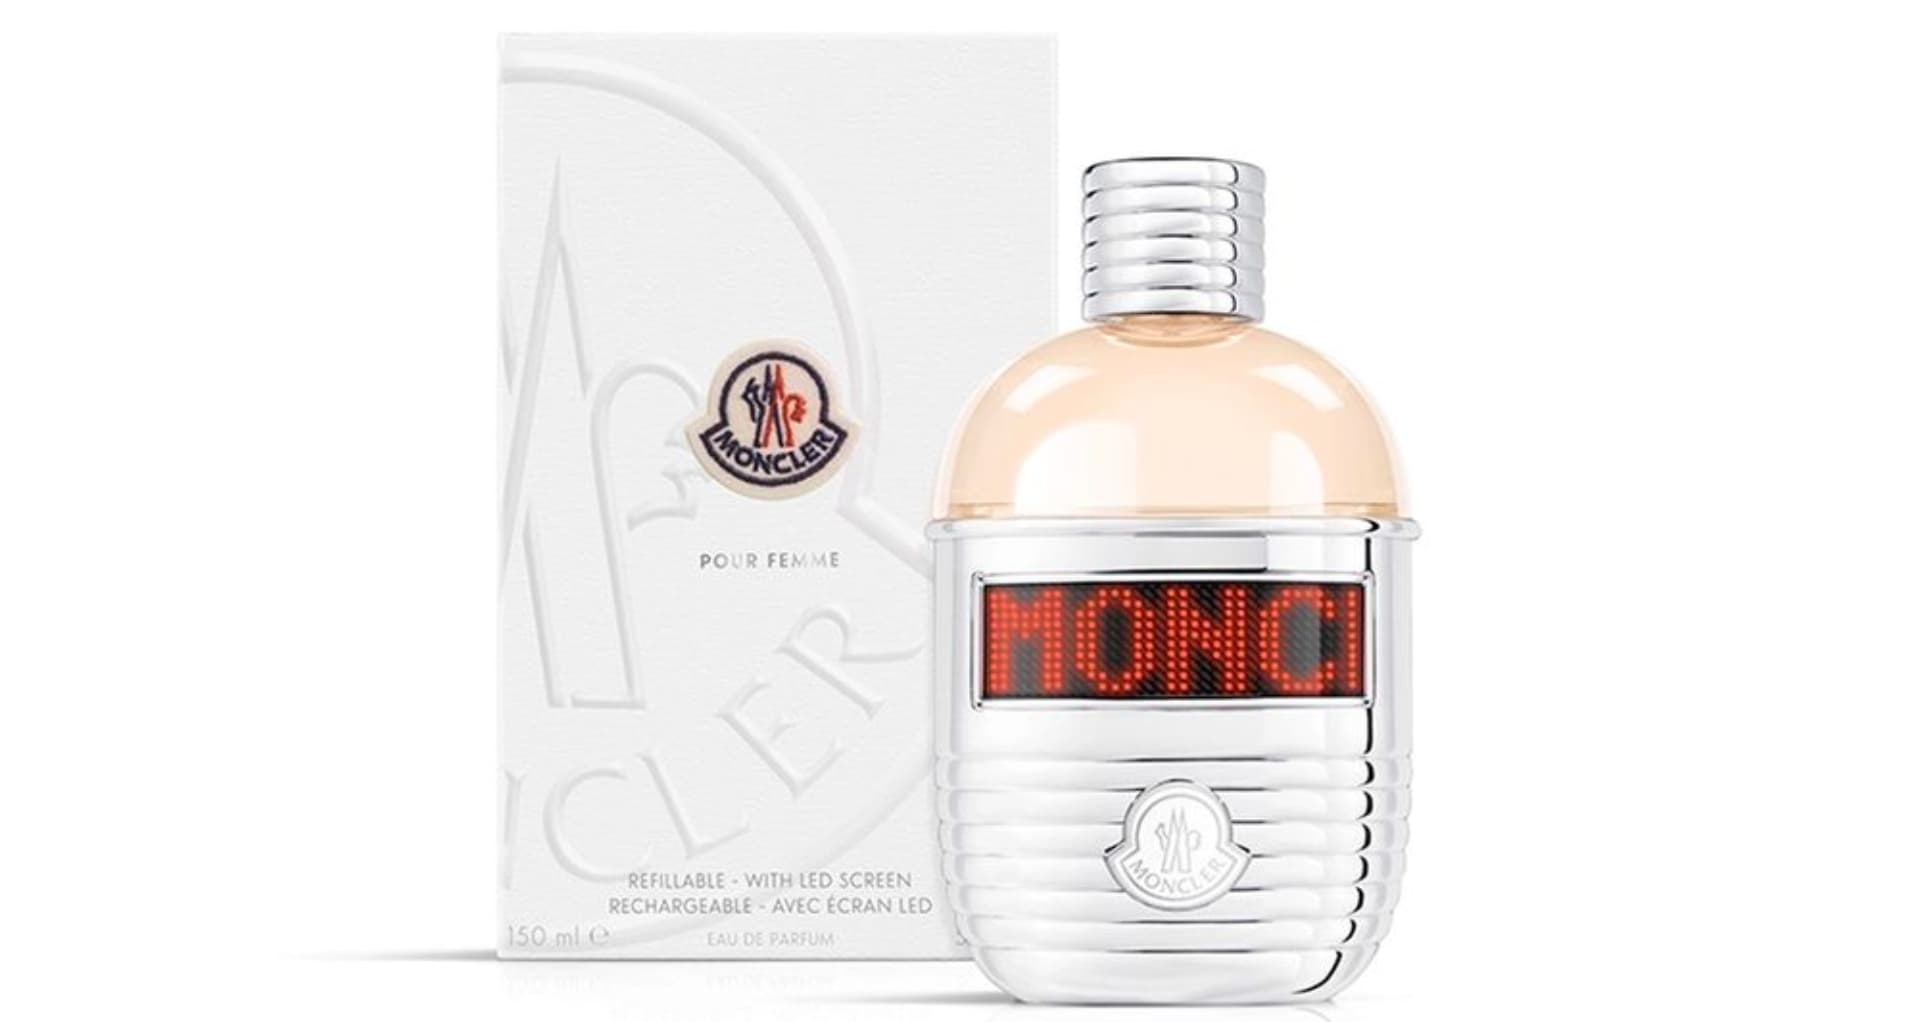 Moncler presentó sus nuevos perfumes para mujeres y hombre